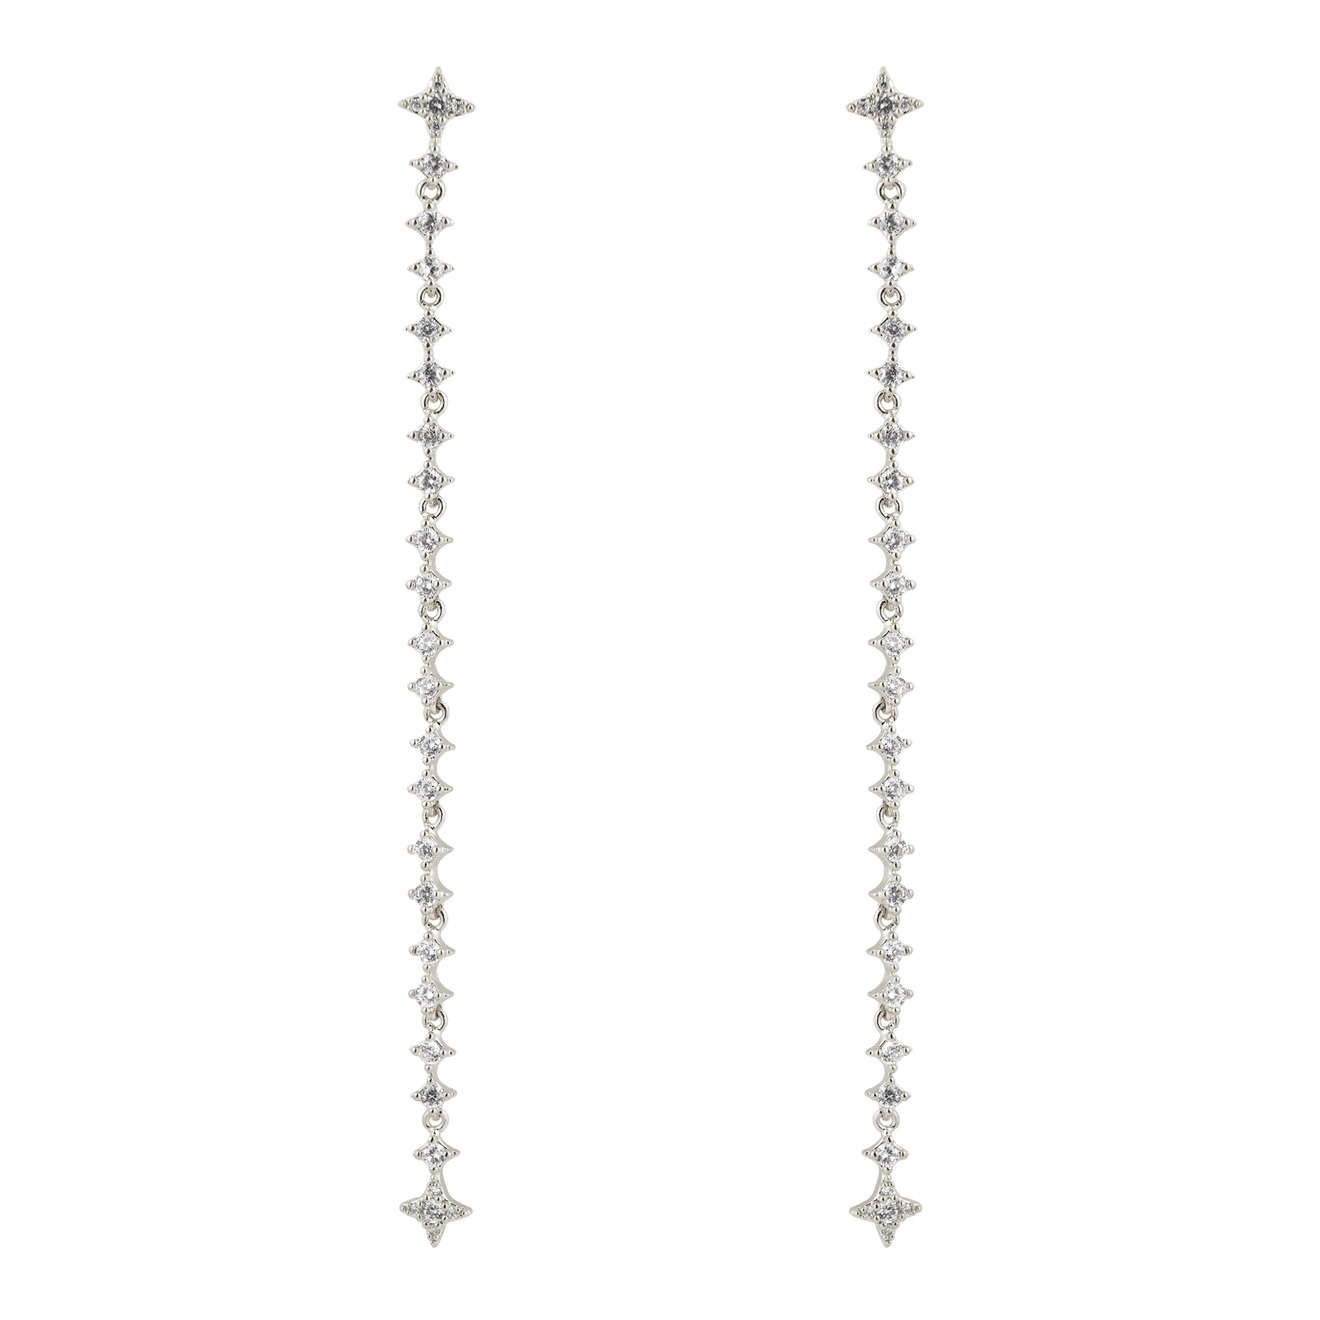 Free Form Jewelry Серебристые длинные серьги с кристаллами-звездами цена и фото